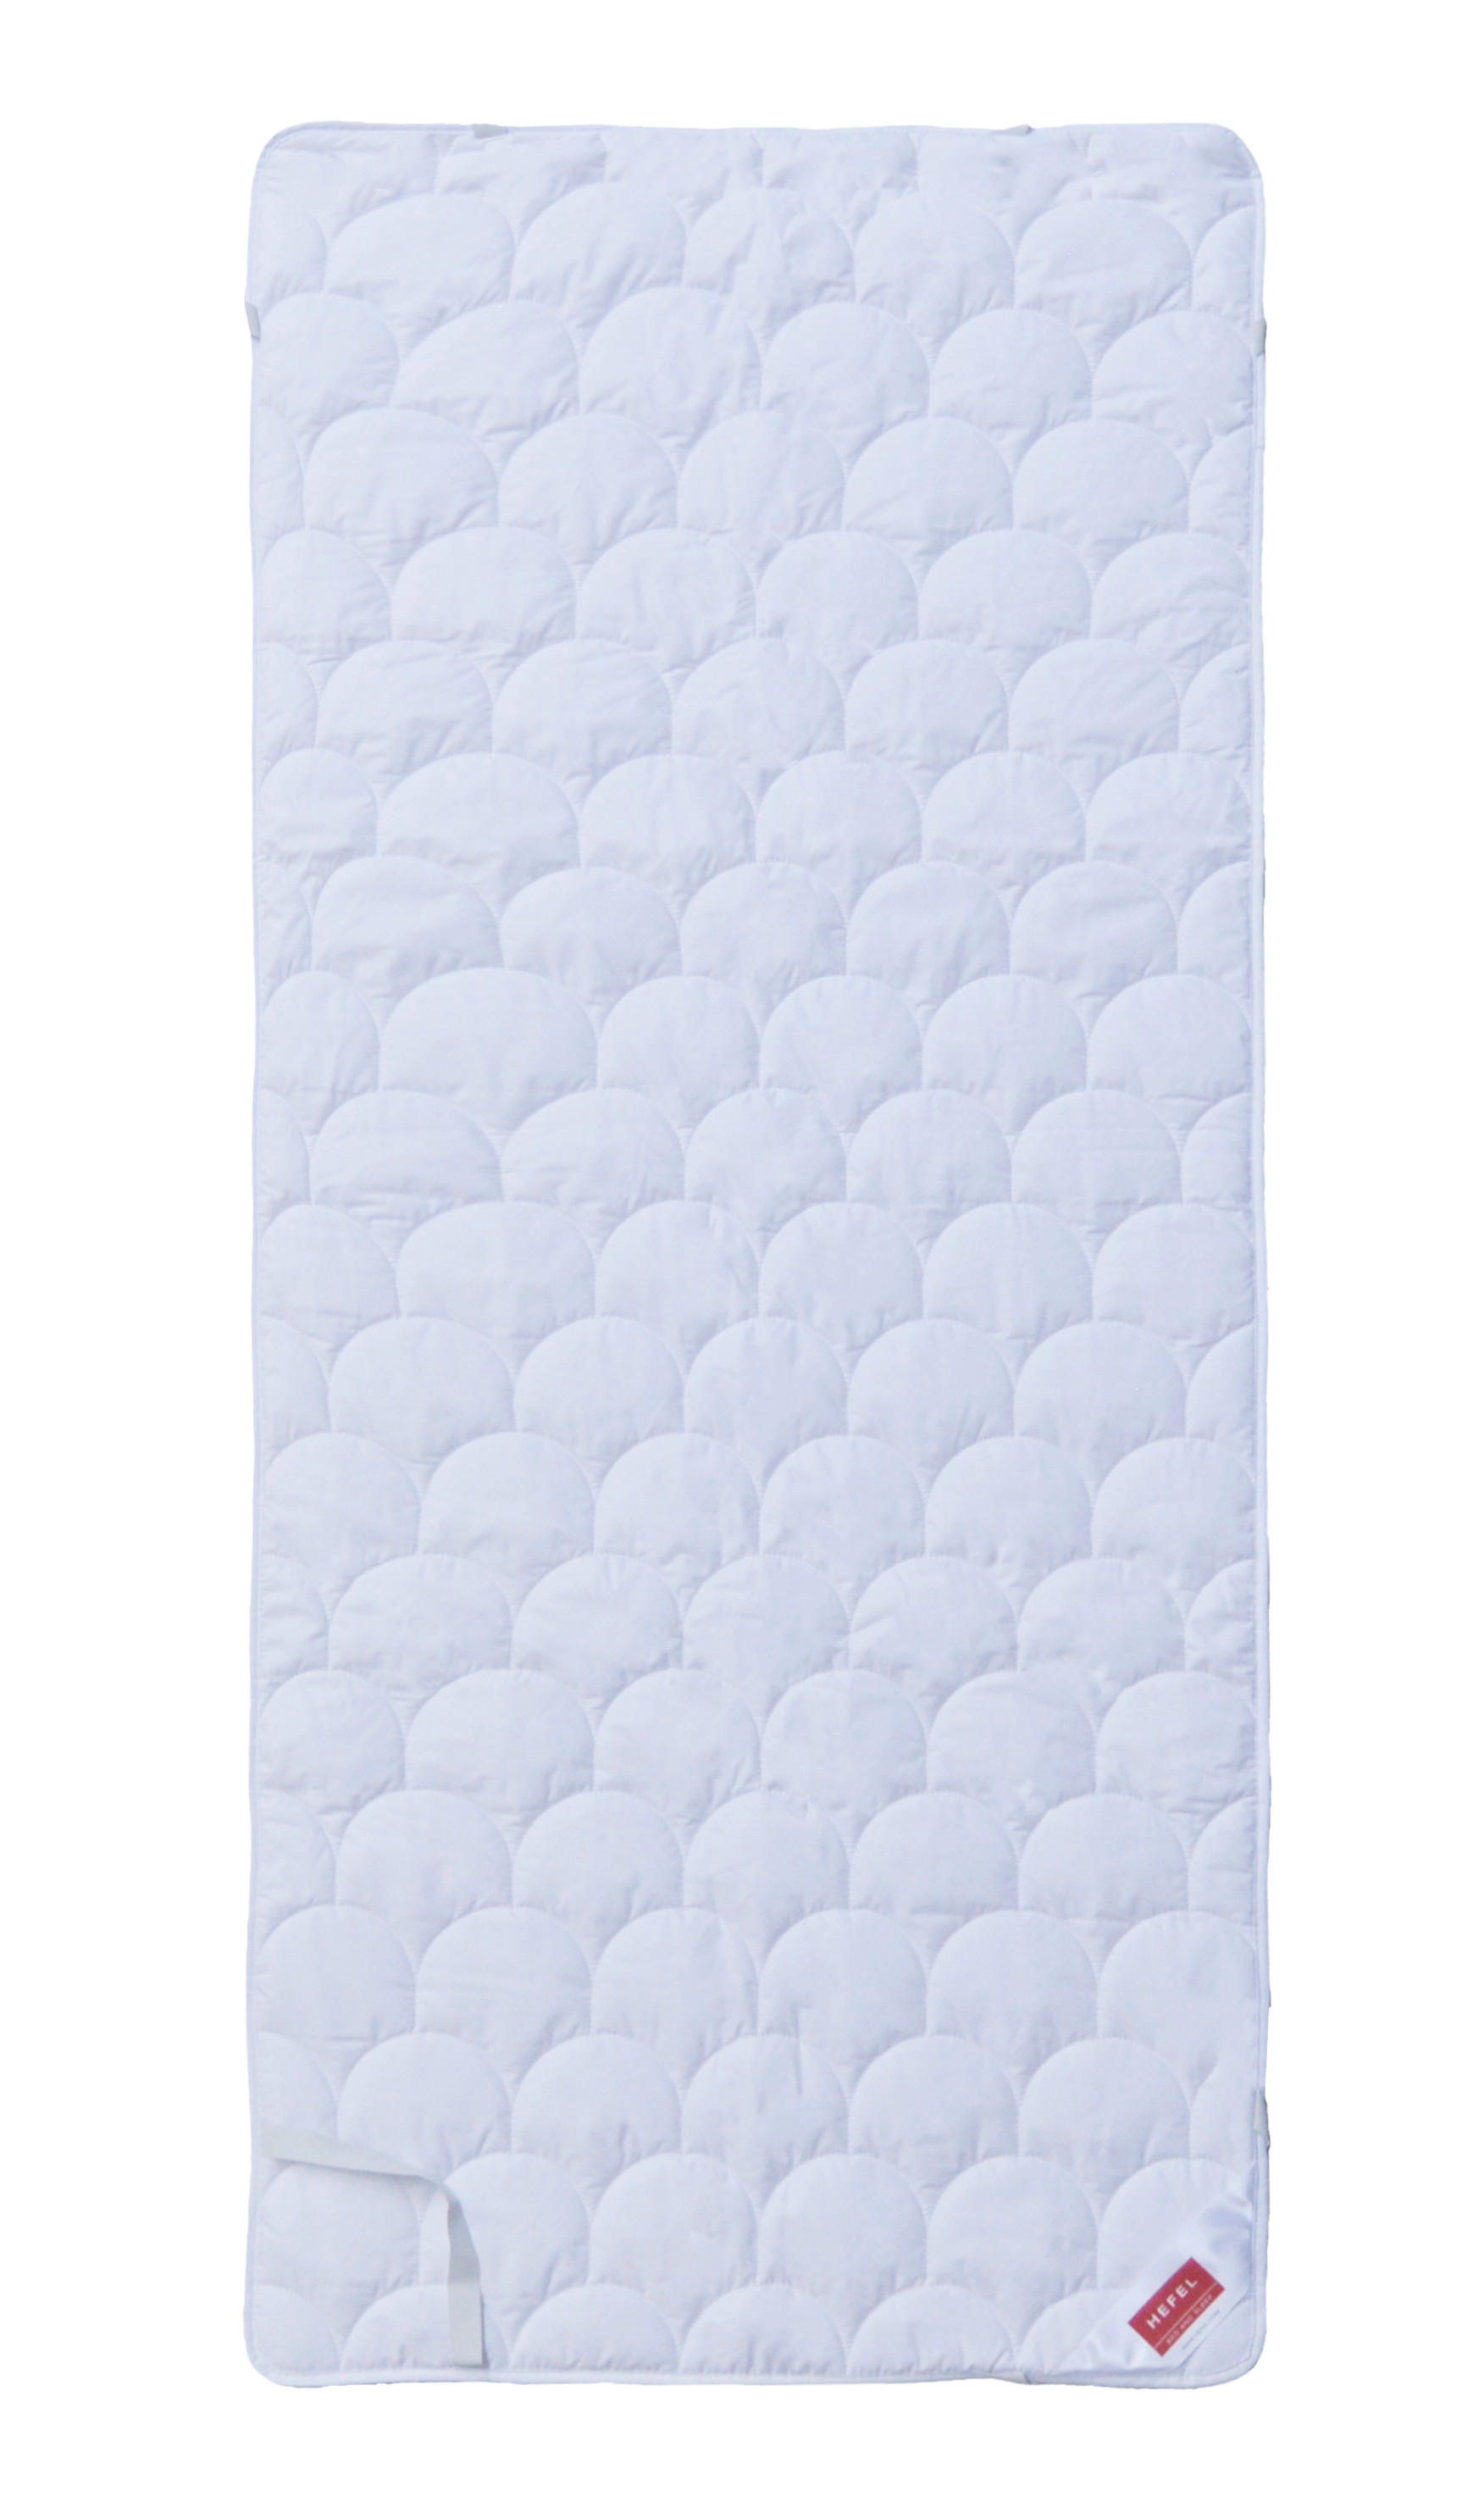 Hefel Textil OCHRANNÝ POVLAK NA MATRACI, 180/200 cm - bílá